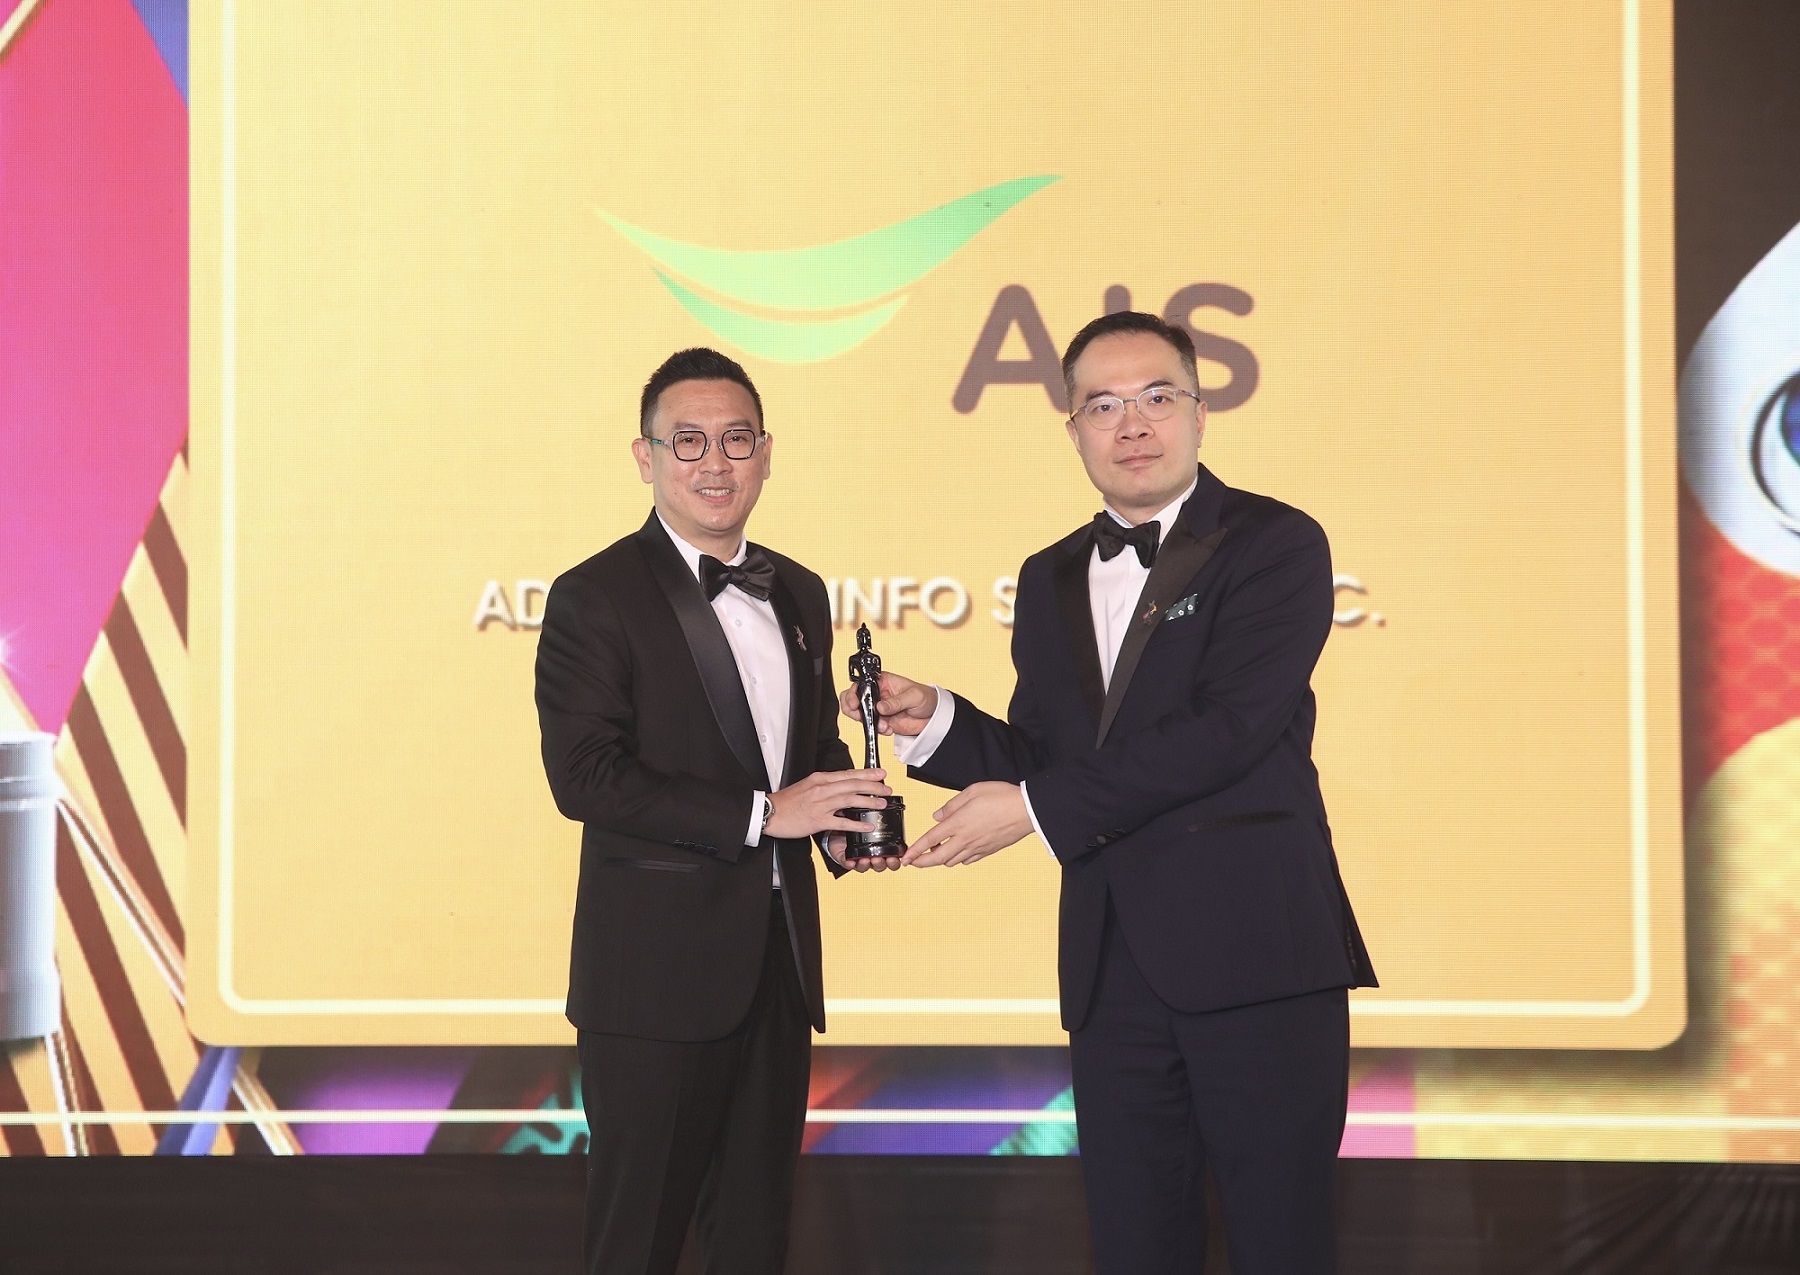 สุดยอด! AIS กวาด 2 รางวัลองค์กรน่าทำงานมากสุดในเอเชีย จากเวที HR Asia Award 4 ปีต่อเนื่อง